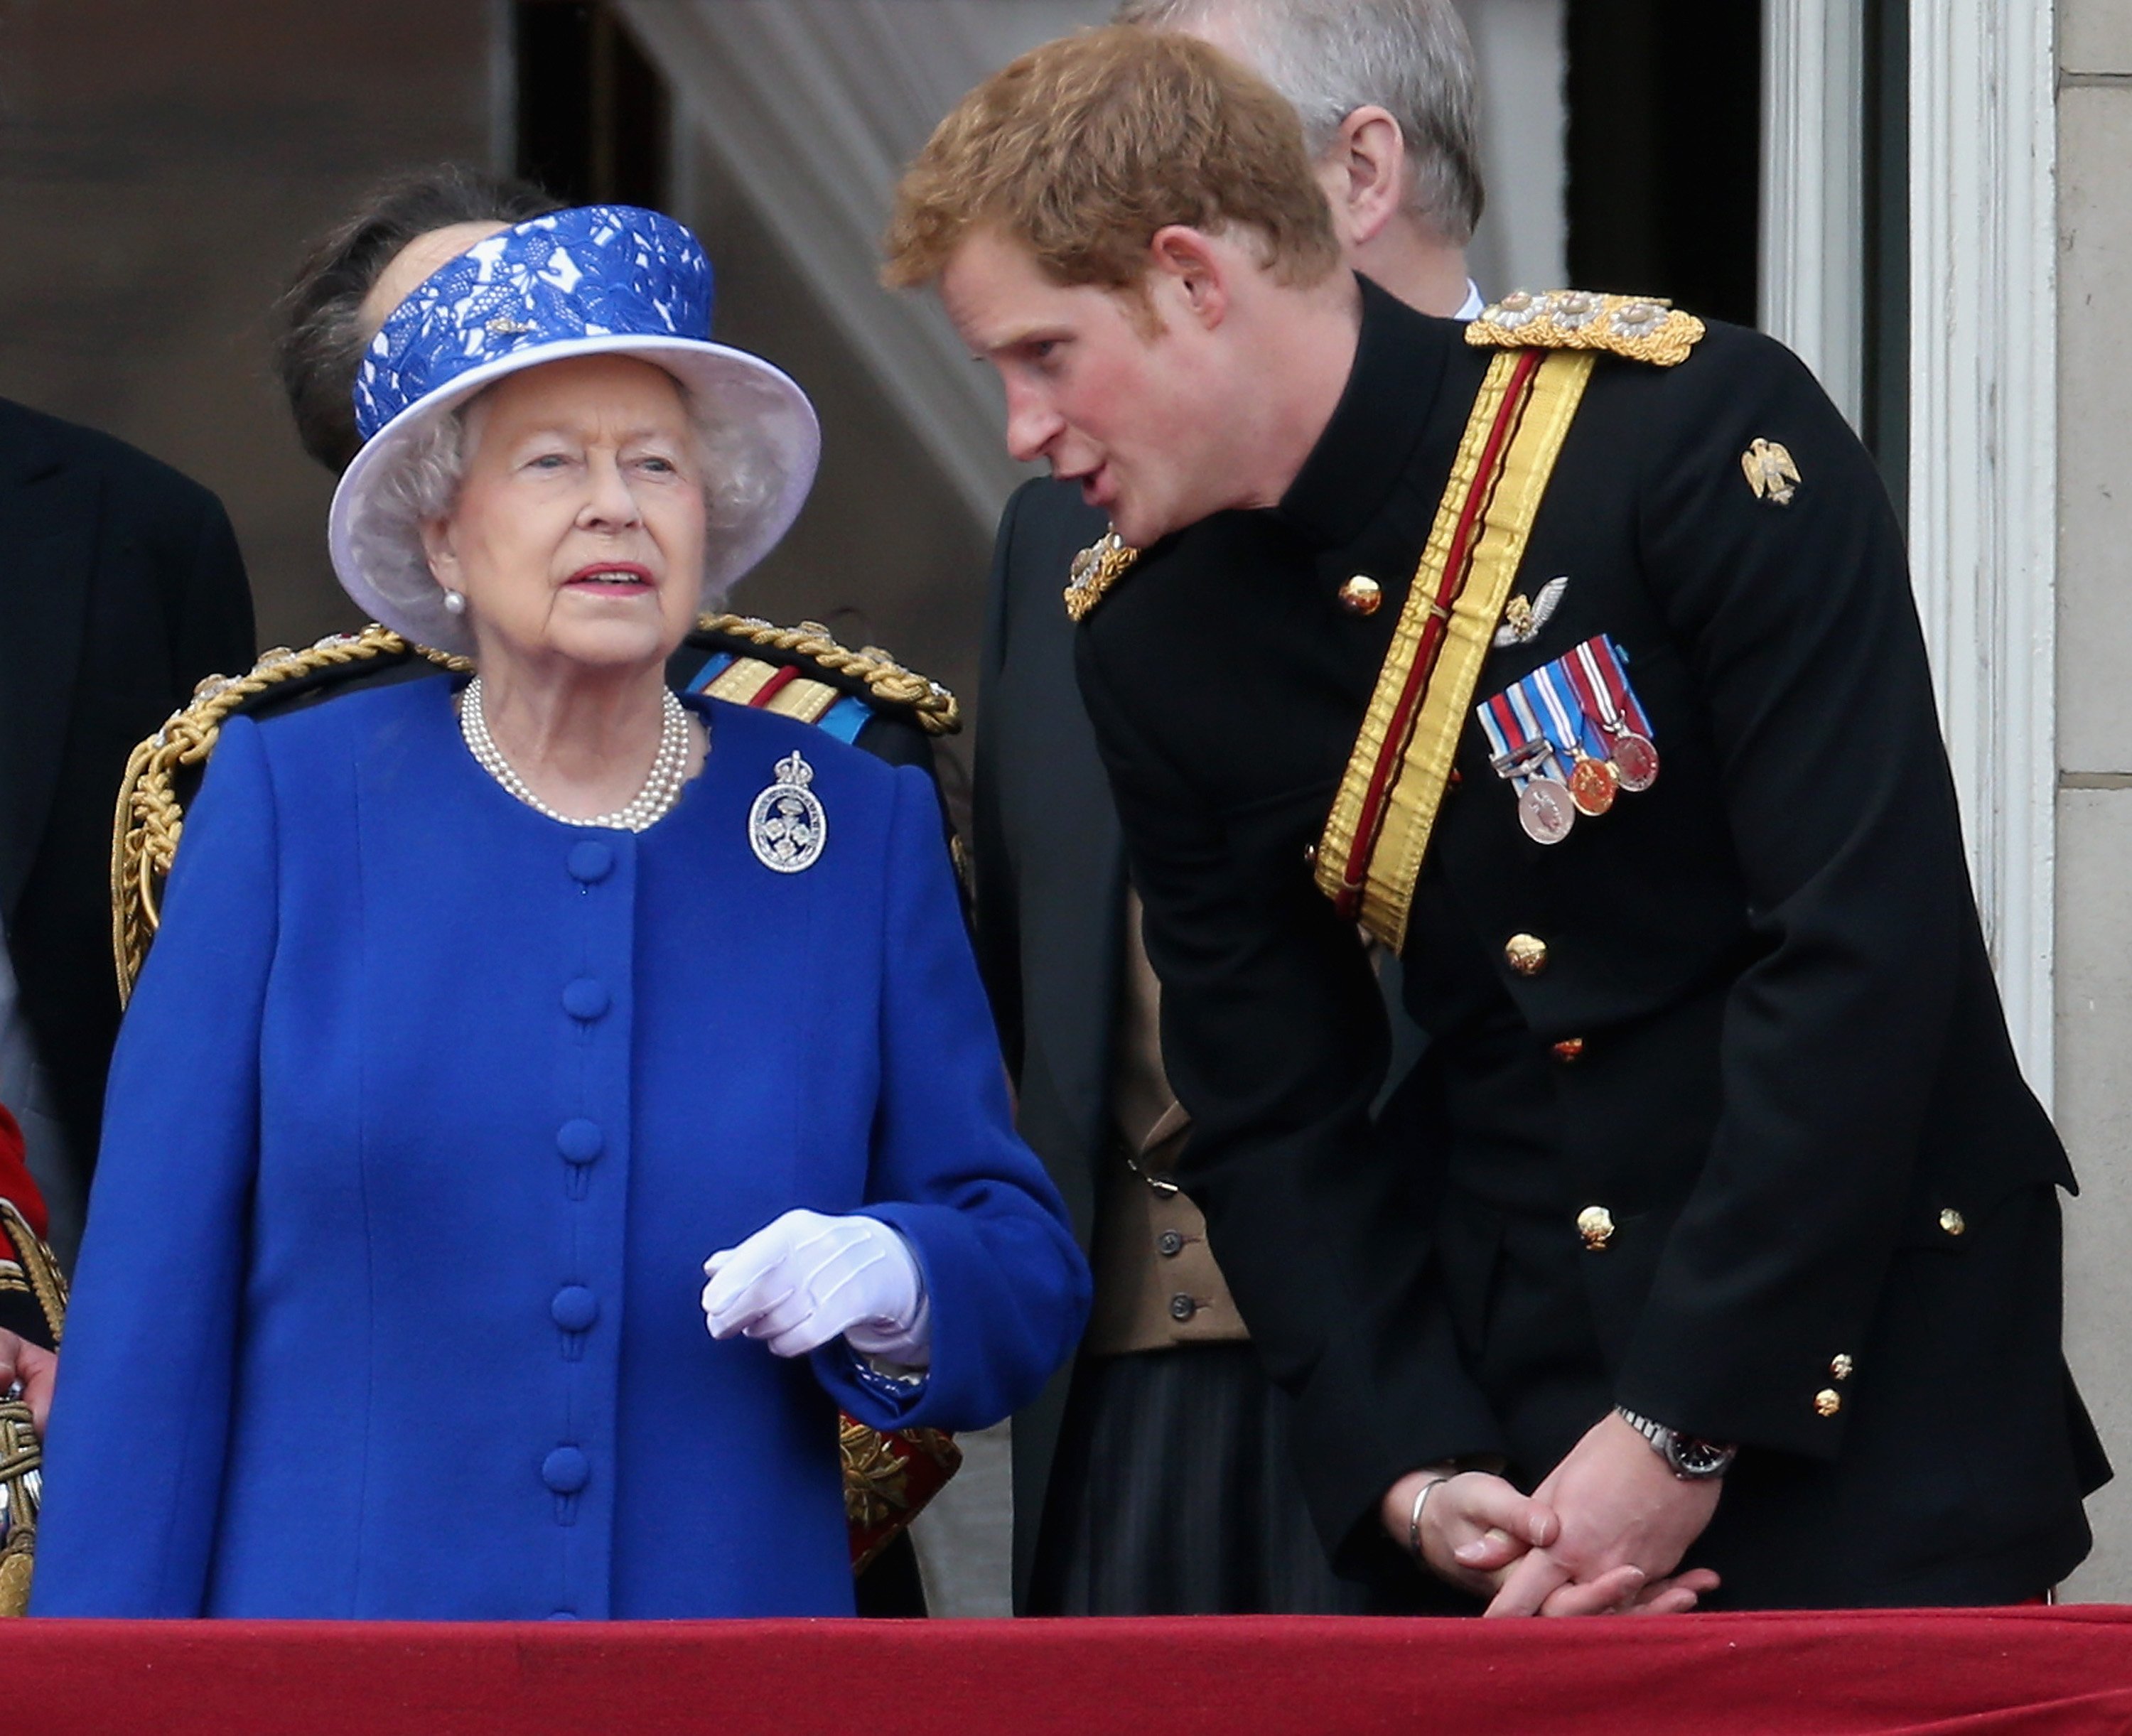 Prinz Harry plaudert mit Königin Elizabeth II. auf dem Balkon des Buckingham Palace während der jährlichen Trooping the Colour-Zeremonie am 15. Juni 2013 in London, England. | Quelle: Getty Images